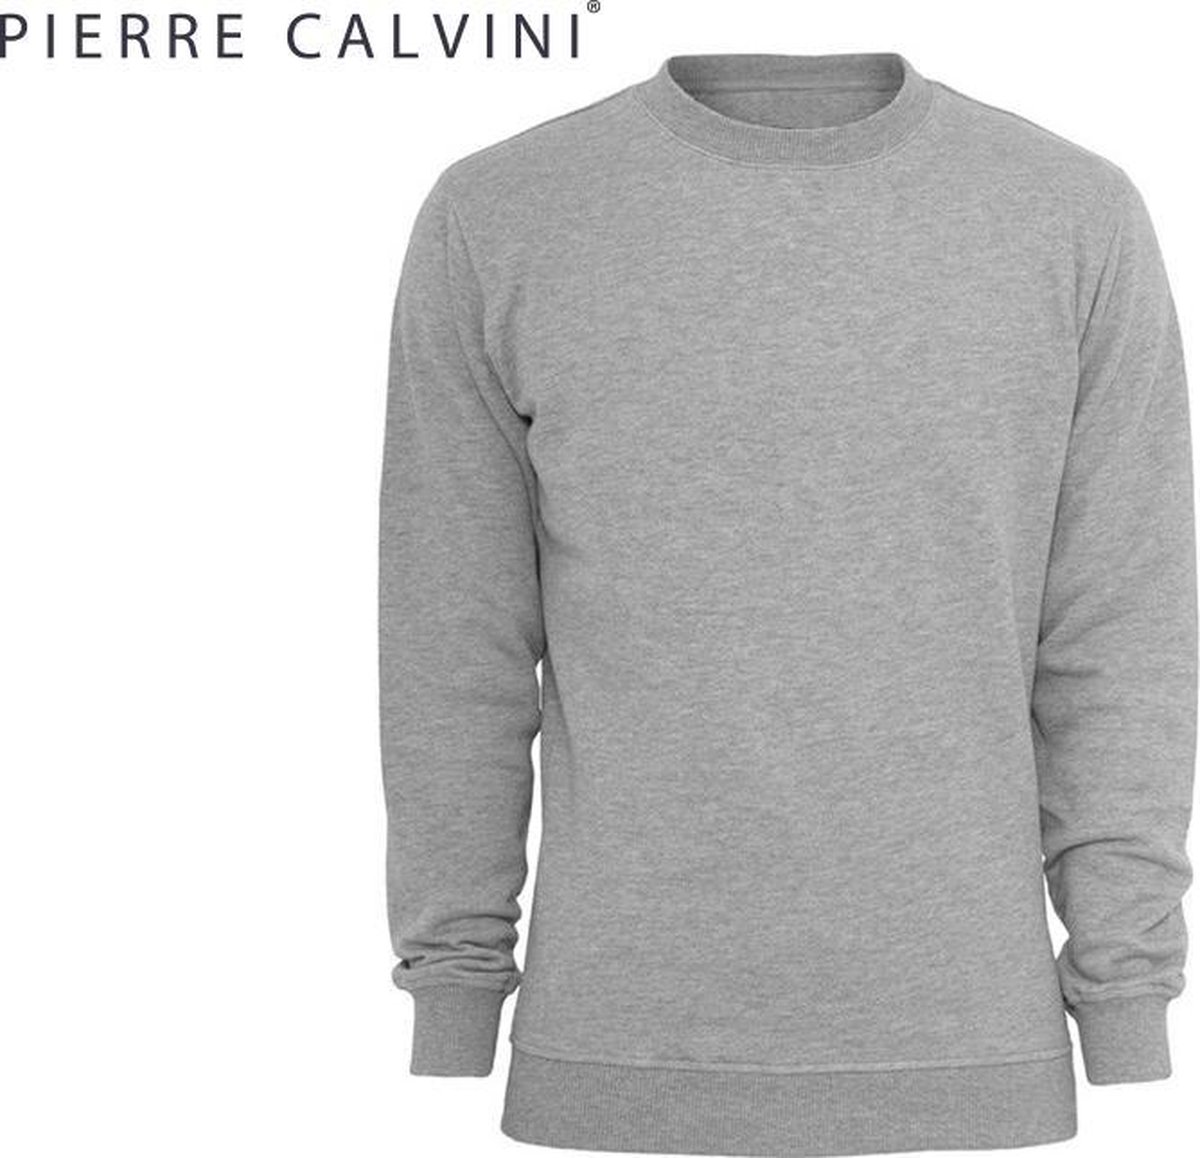 Pierre Calvini - Trui Heren - Sweater Heren - Grijs - L